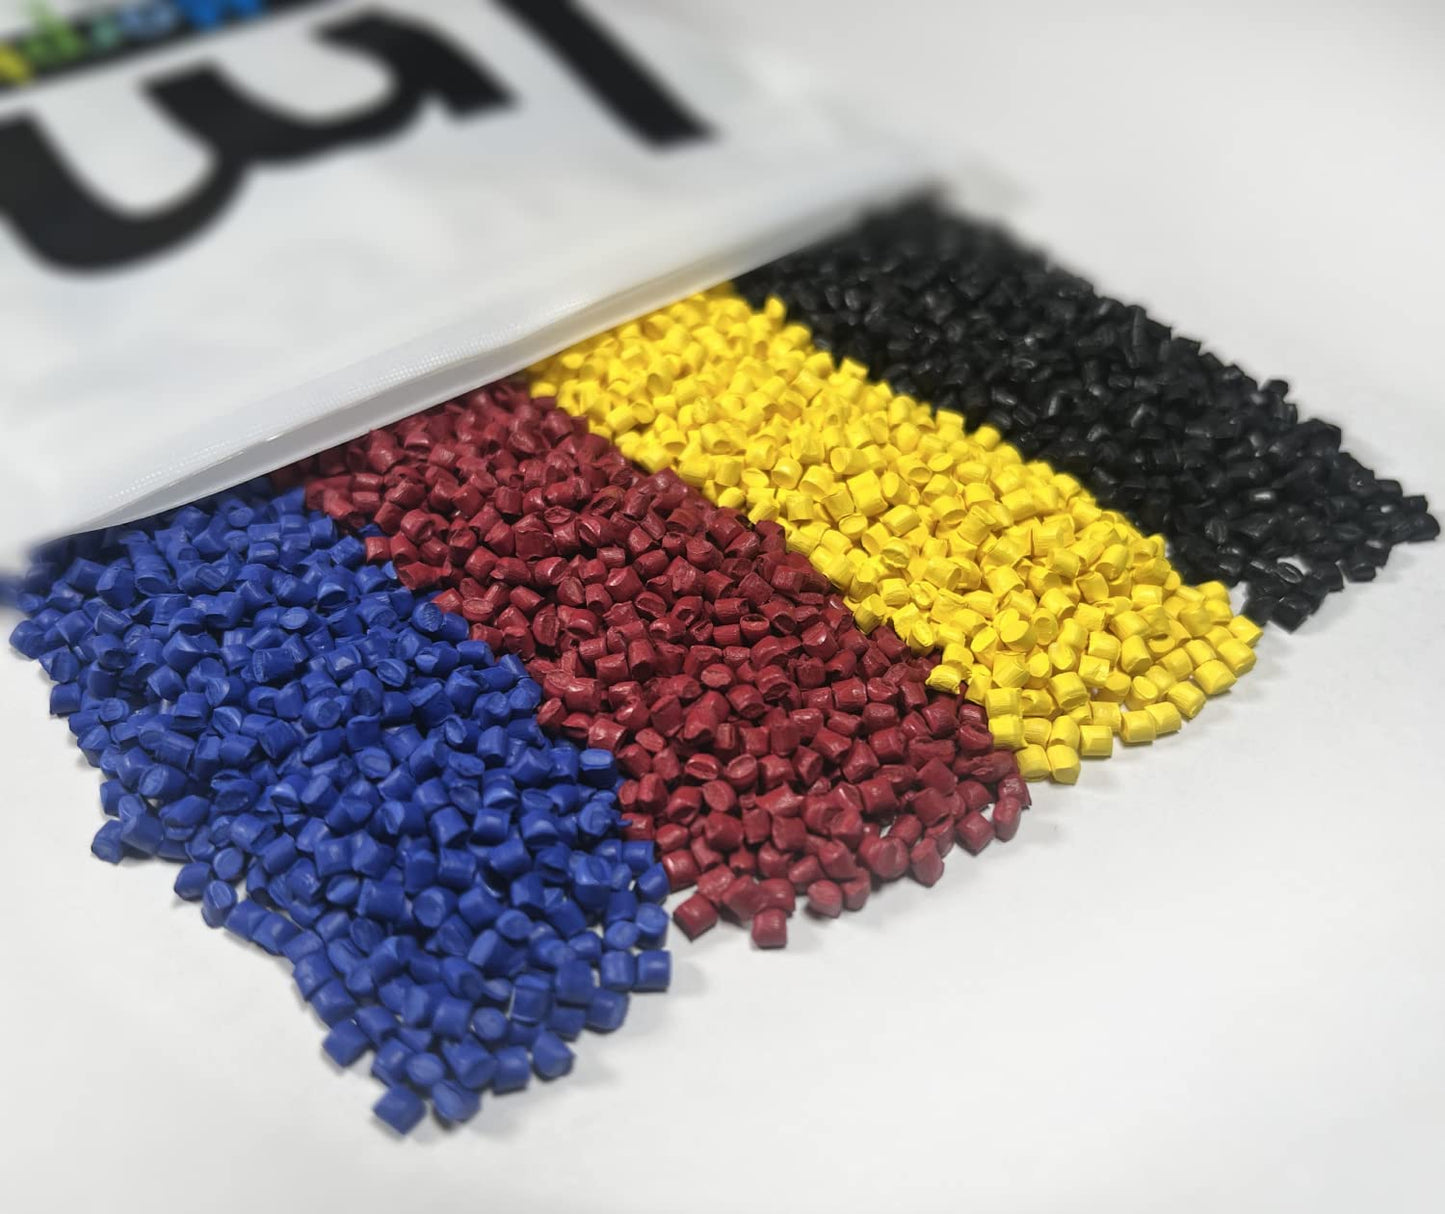 7.2oz InstaMorph Moldable Plastic & Color Mixing Pigment Pack Bundle